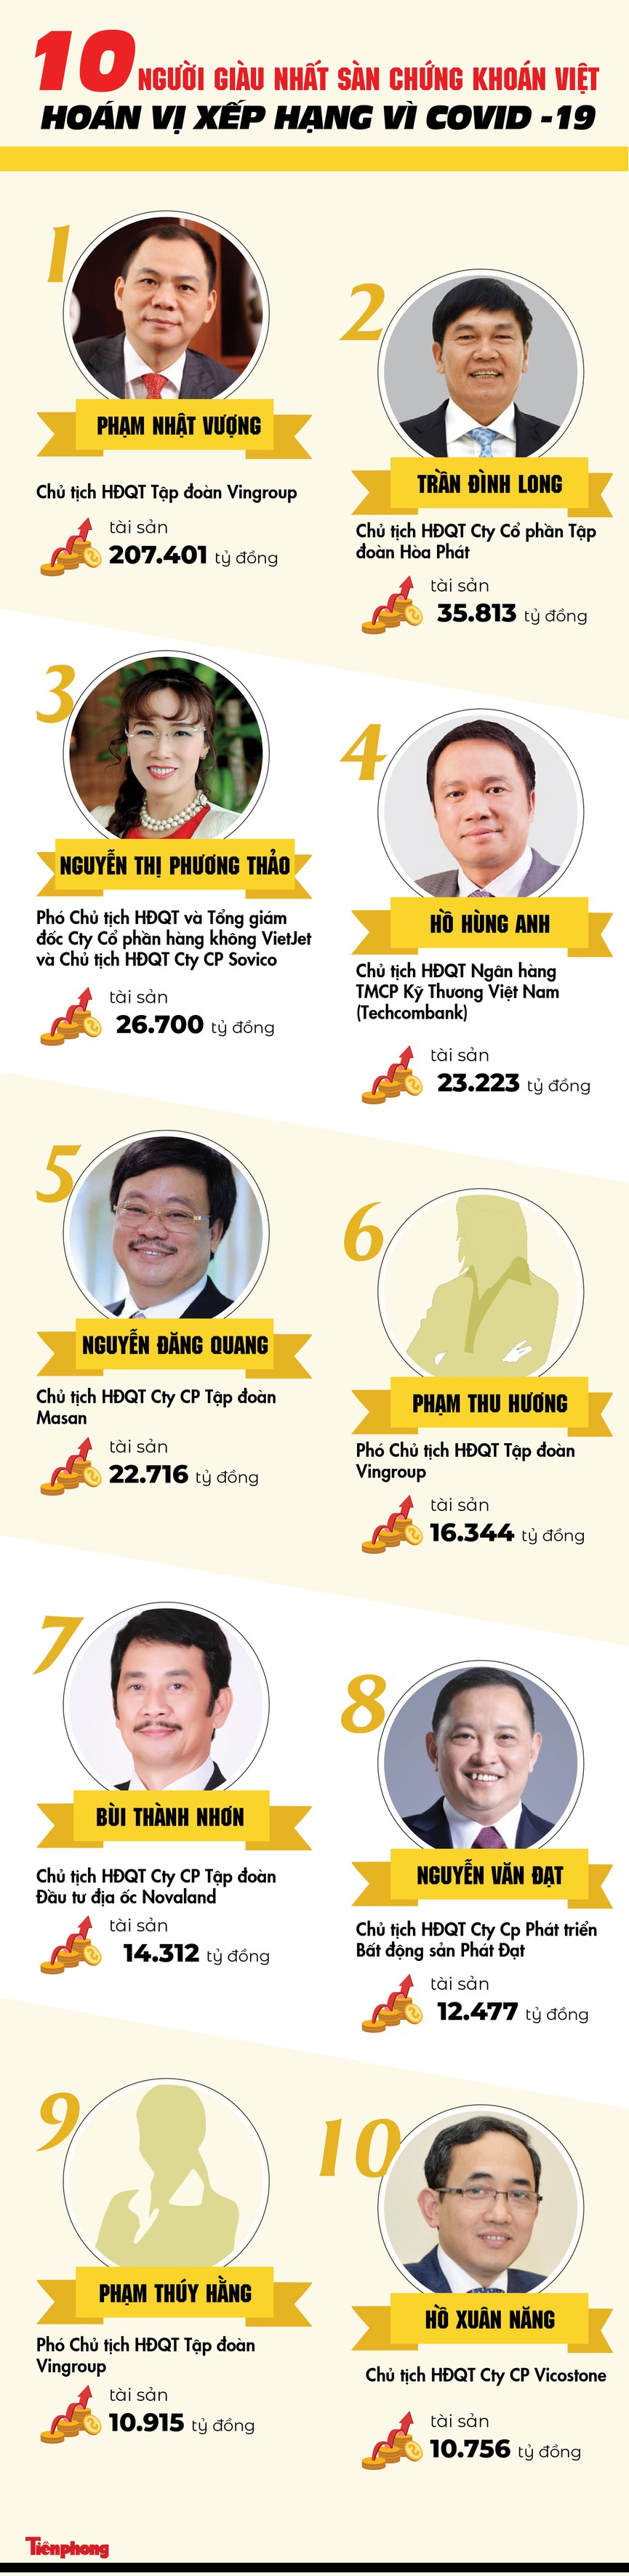 10 người giàu nhất sàn chứng khoán Việt: Hoán vị xếp hạng vì COVID -19 - ảnh 1